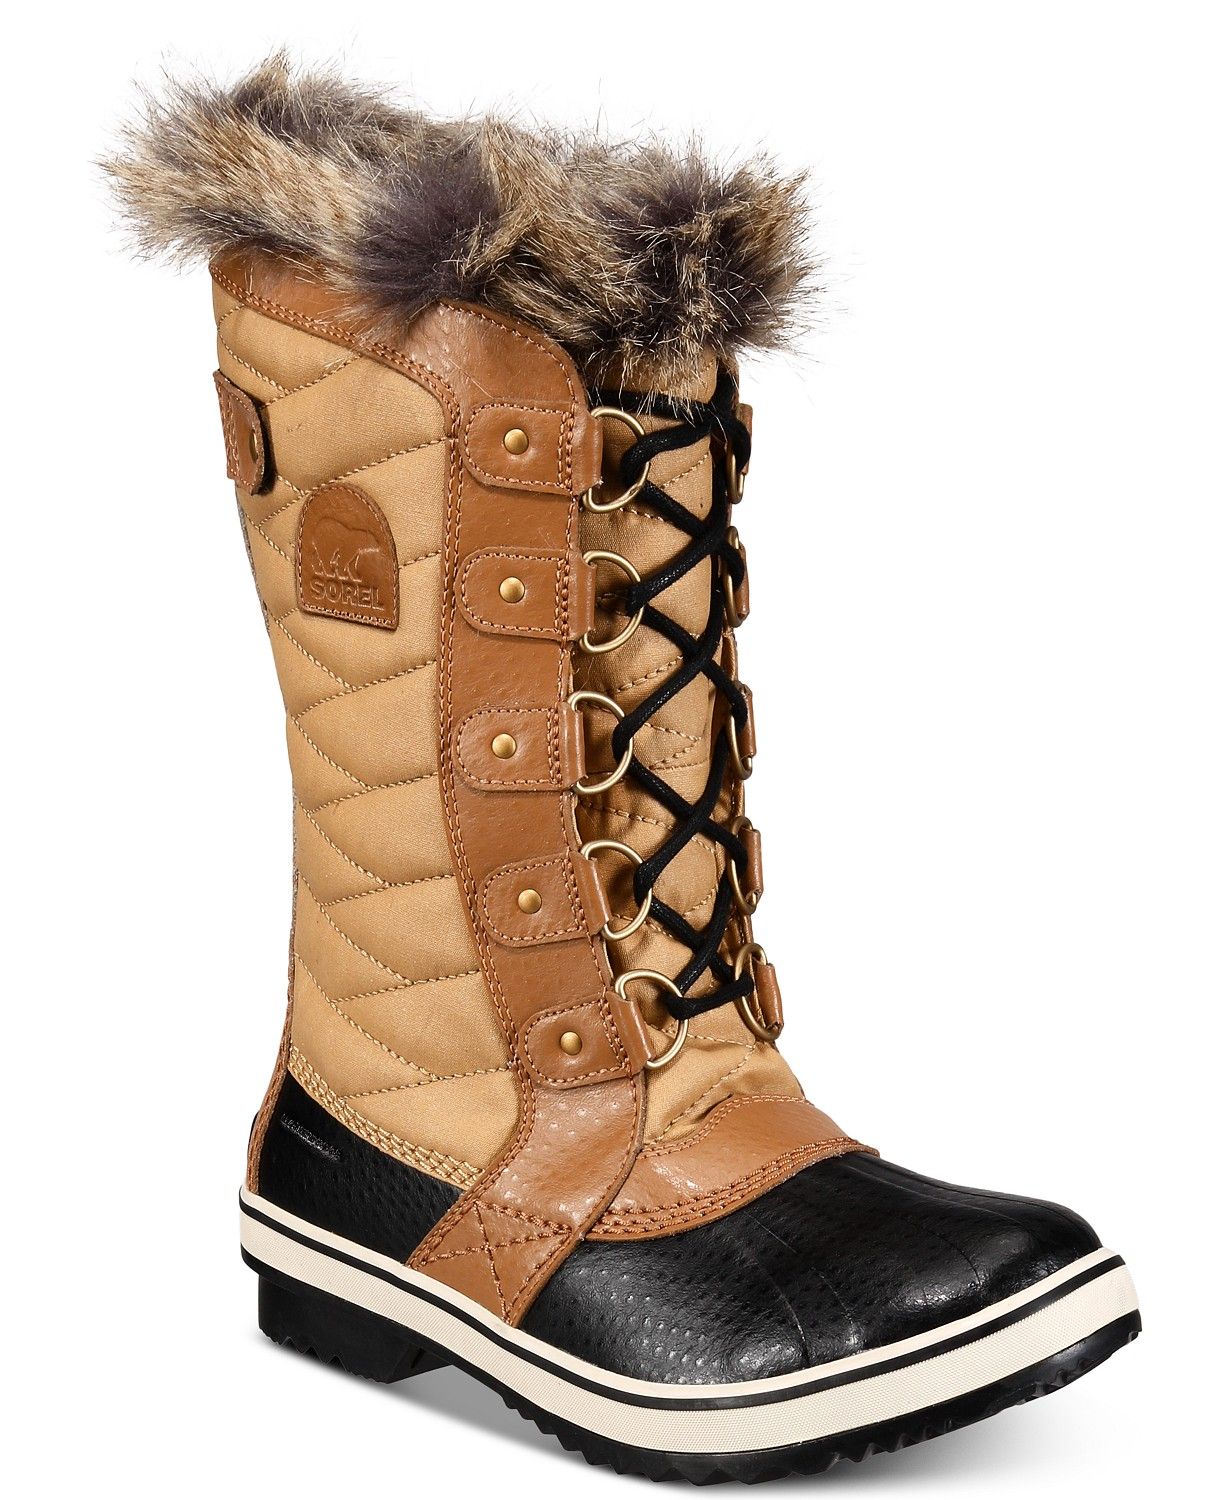 Women's Tofino II CVS Waterproof Winter Boots | Macys (US)